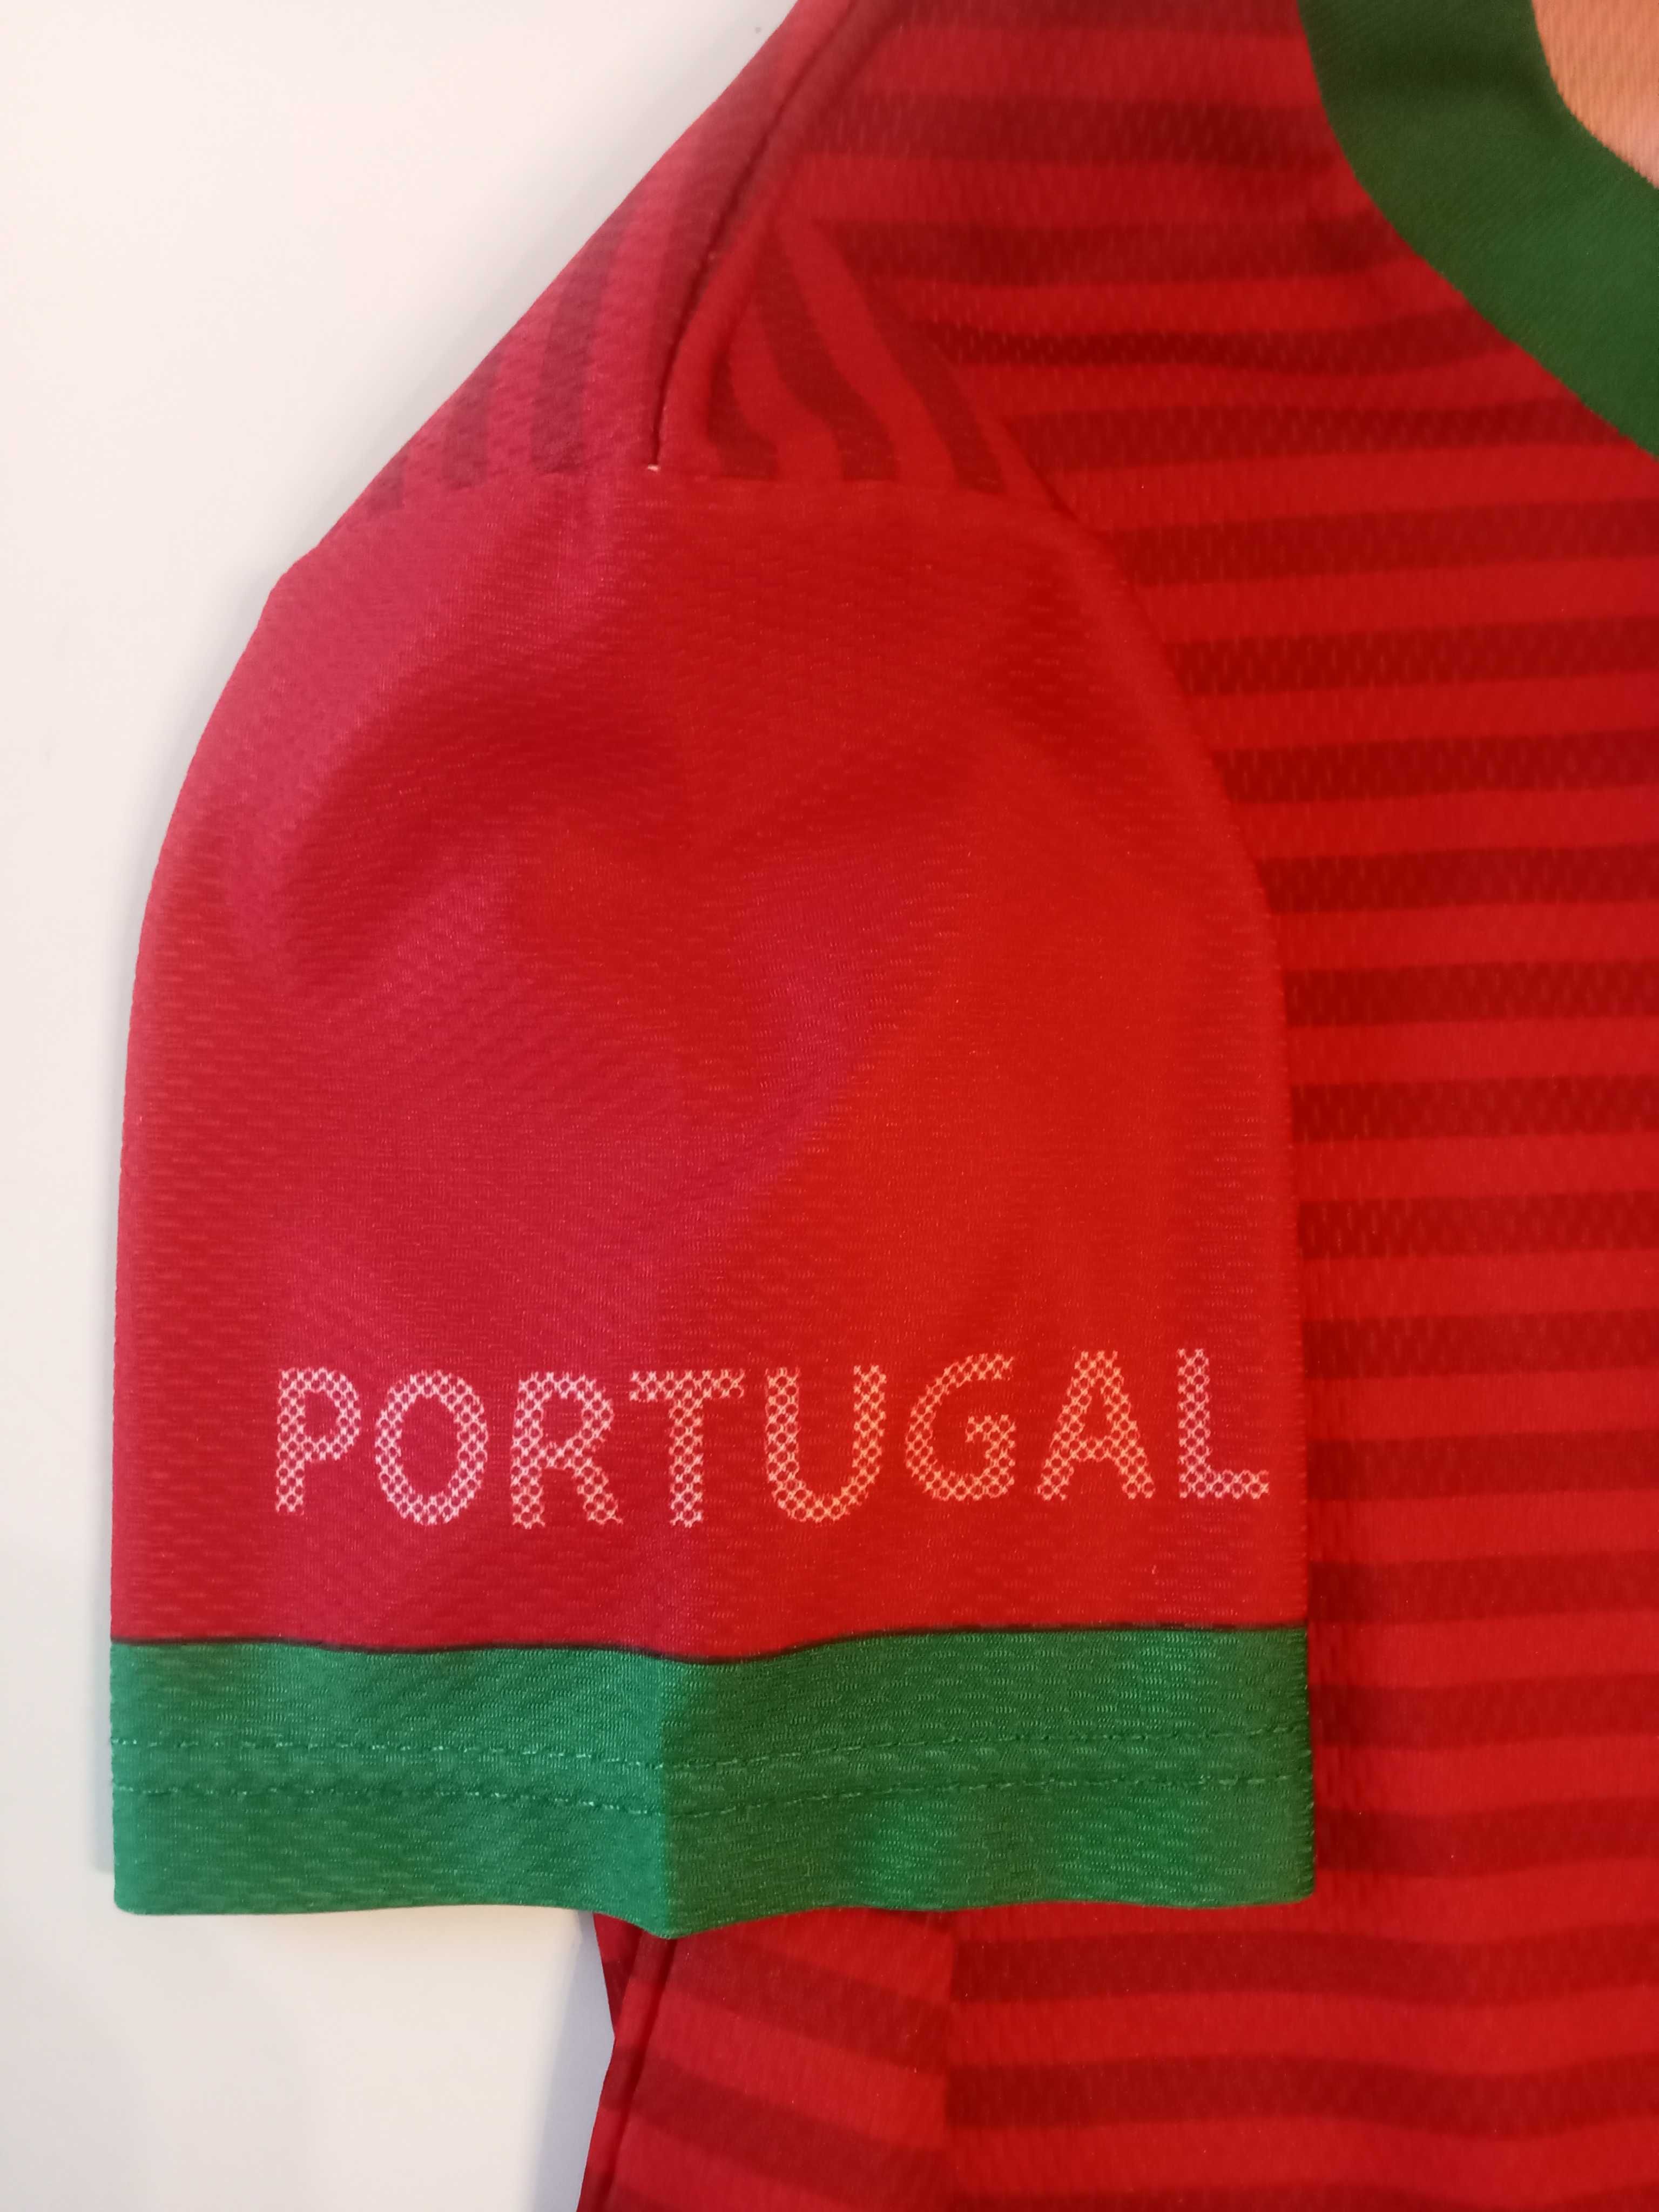 Camisola Futebol Portugal - Criança 6, 7, 8, 9 anos